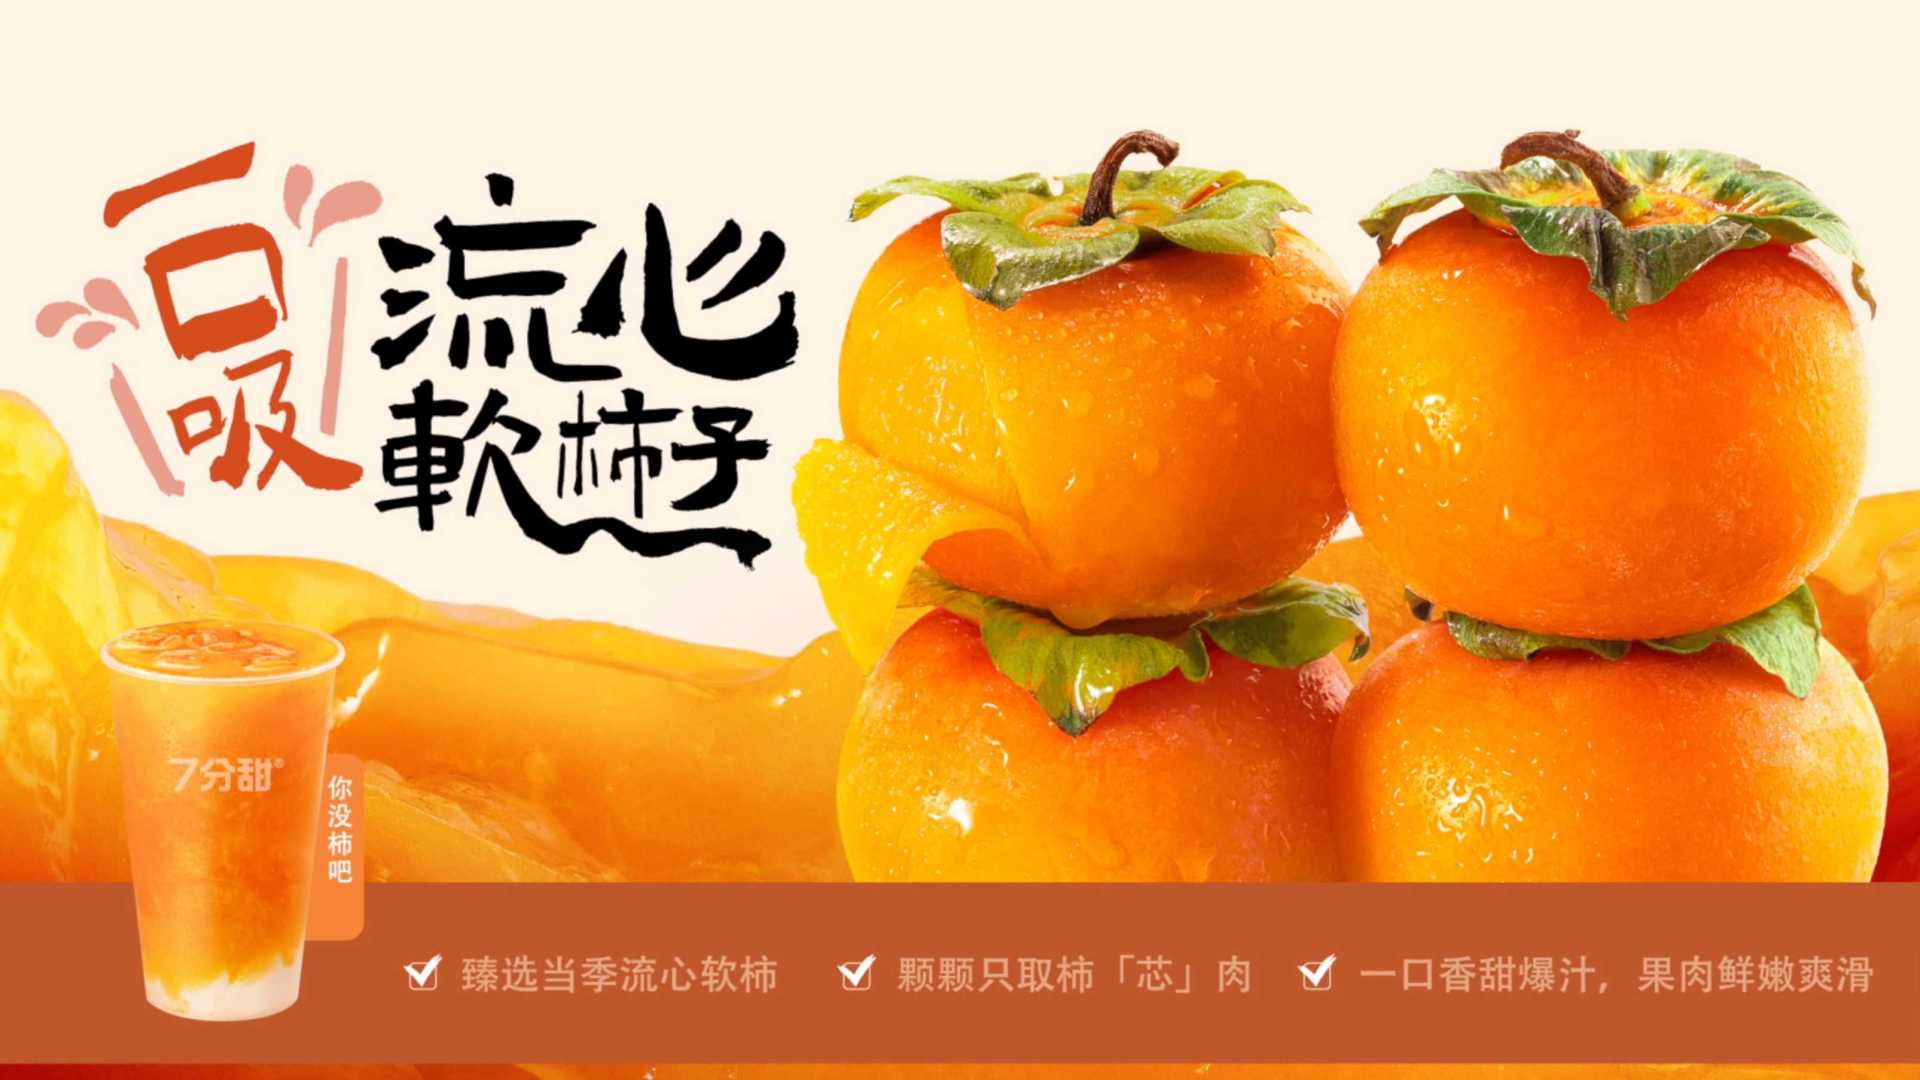 斑马视界 7分甜柿子奶茶广告